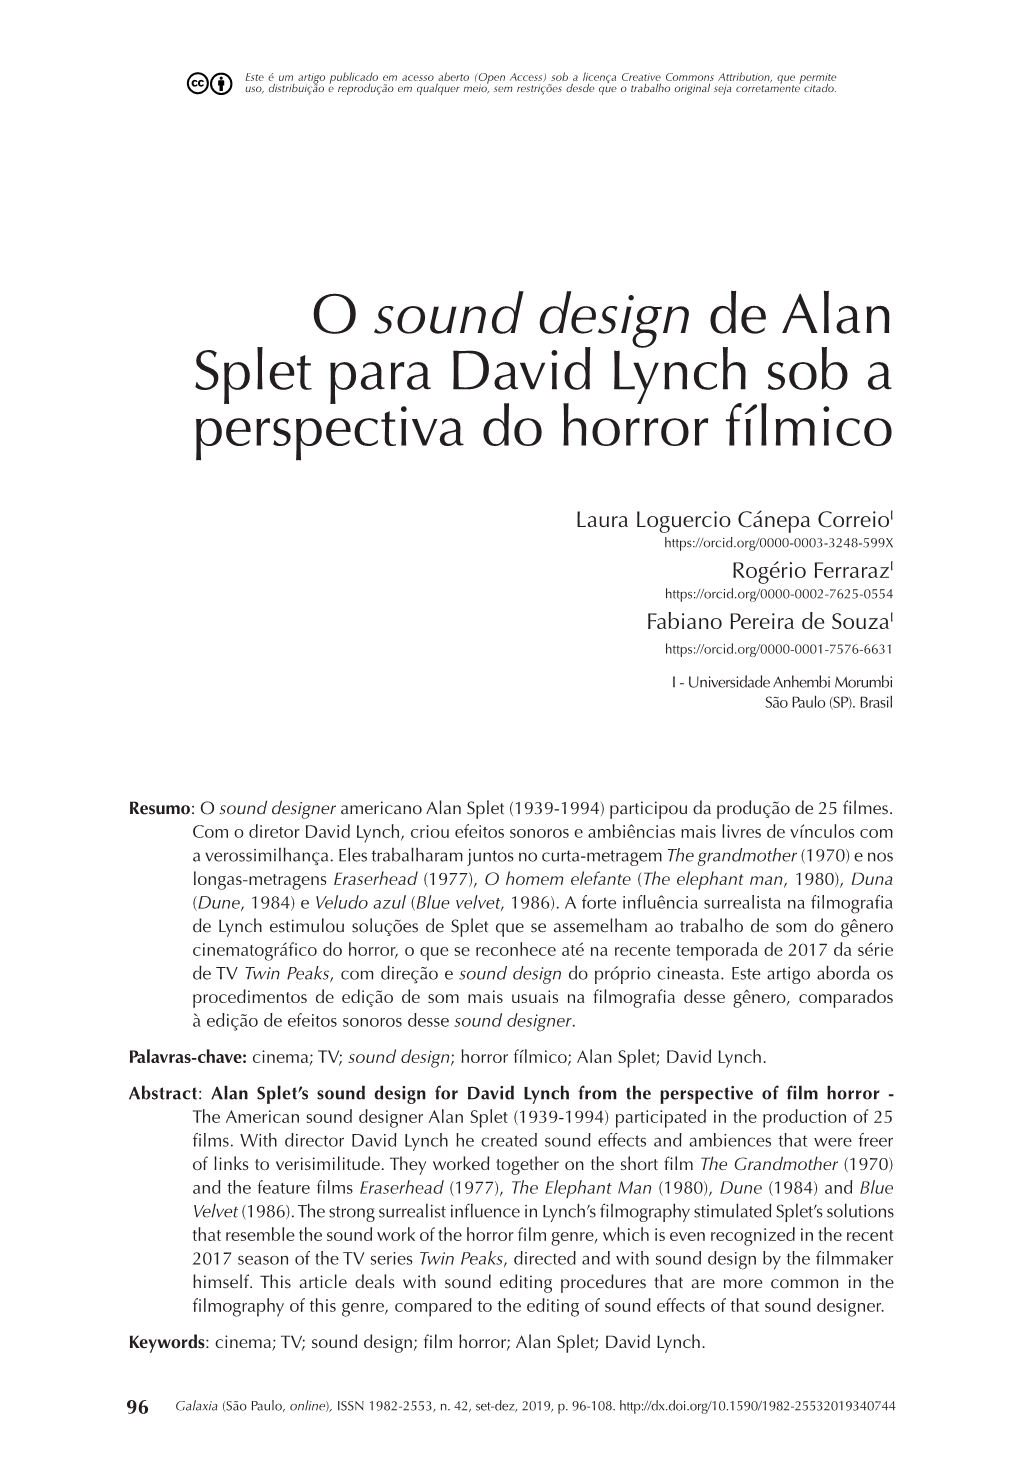 O Sound Design De Alan Splet Para David Lynch Sob a Perspectiva Do Horror Fílmico